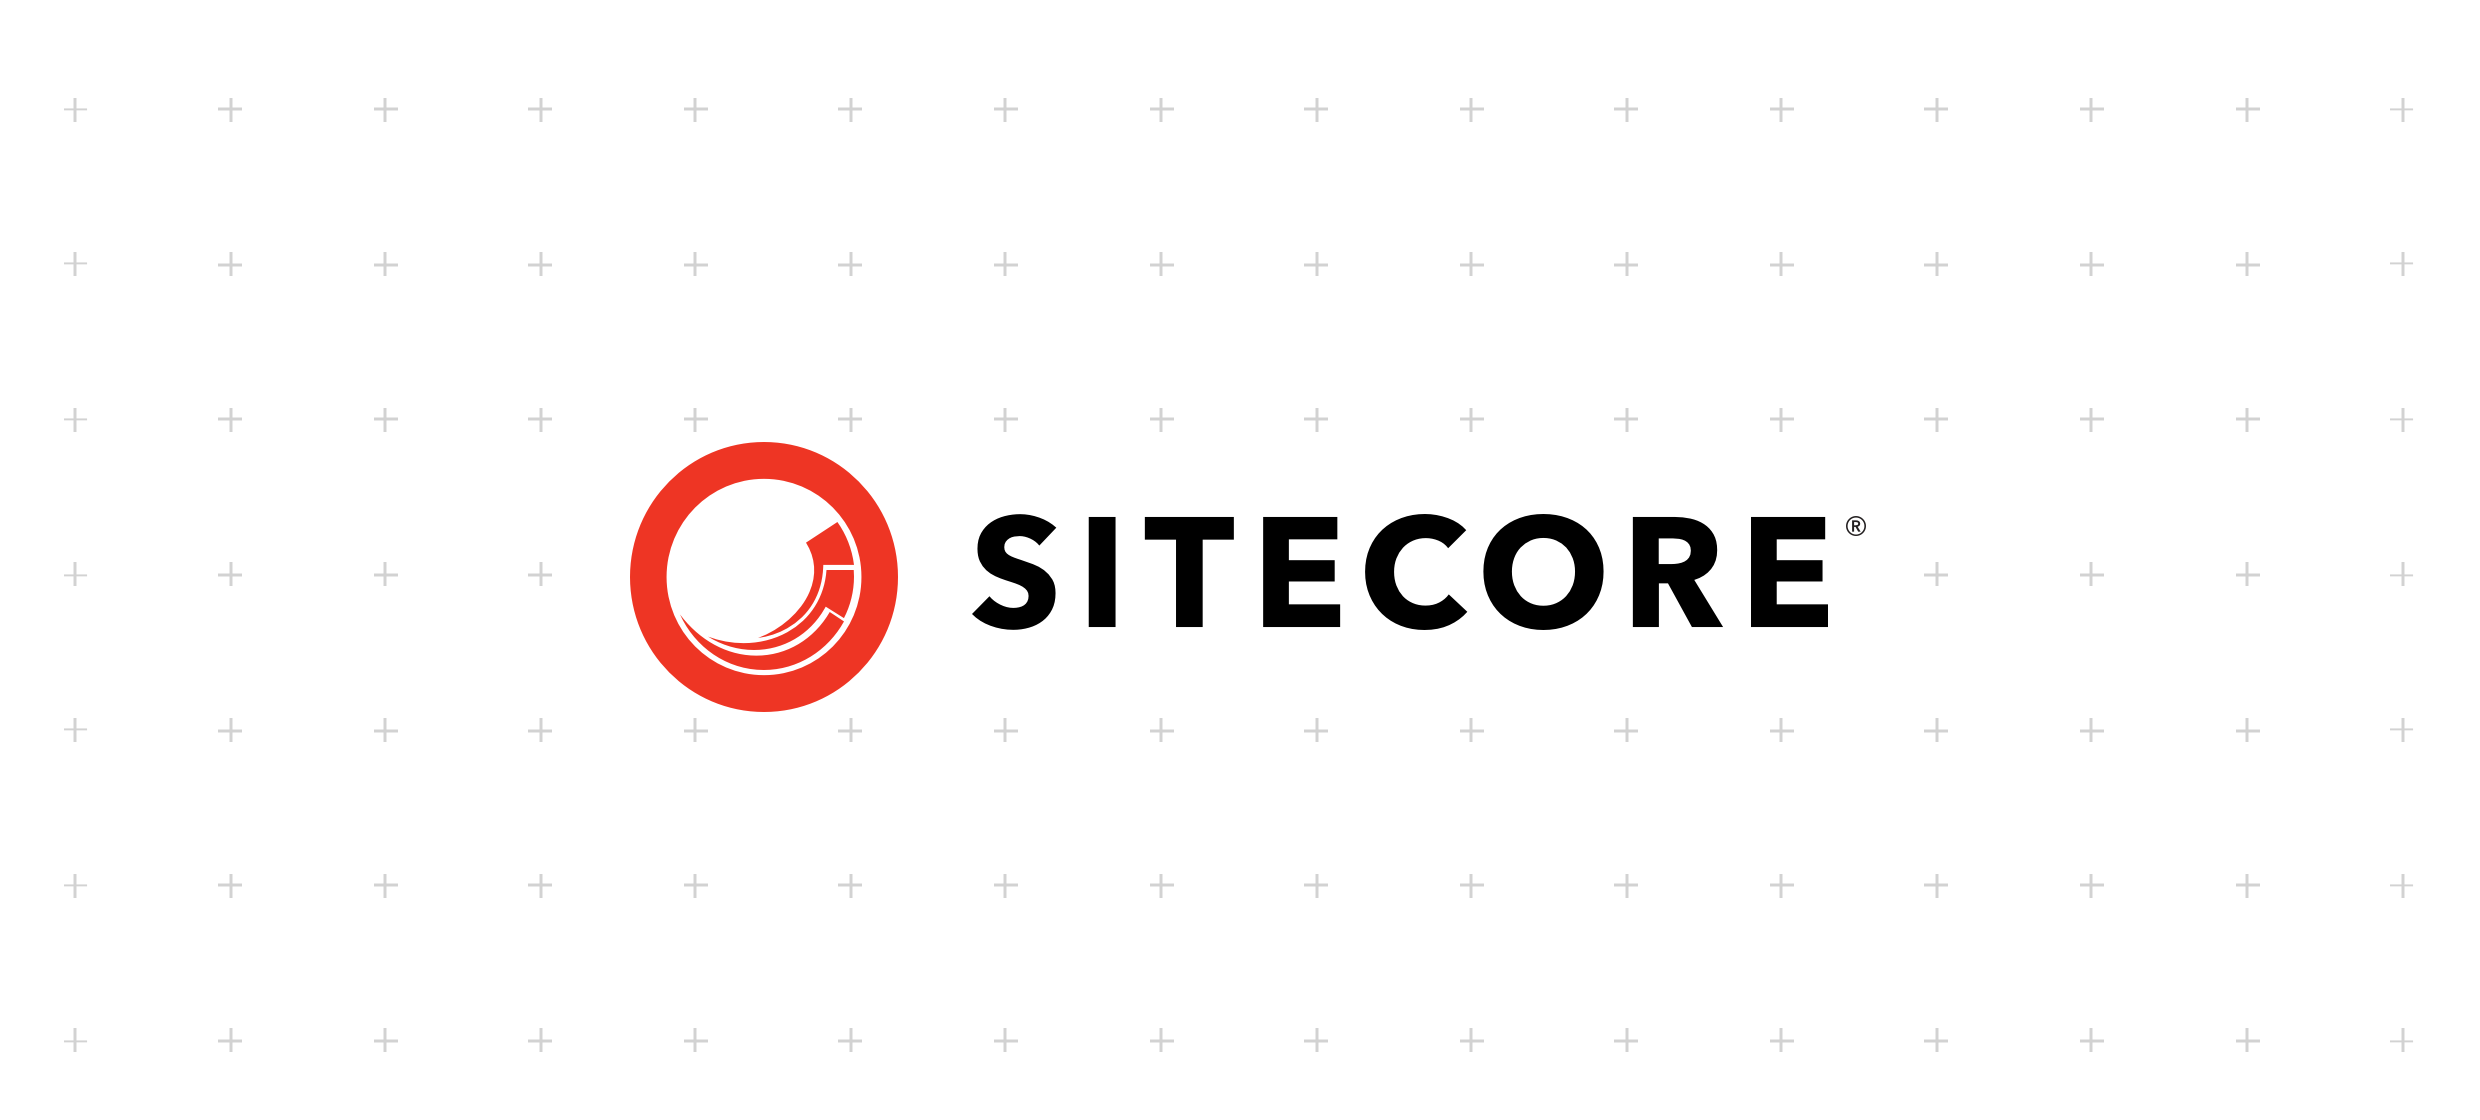 https://www.contentbloom.com/wp-content/uploads/2020/06/Sitecore-Hero.png